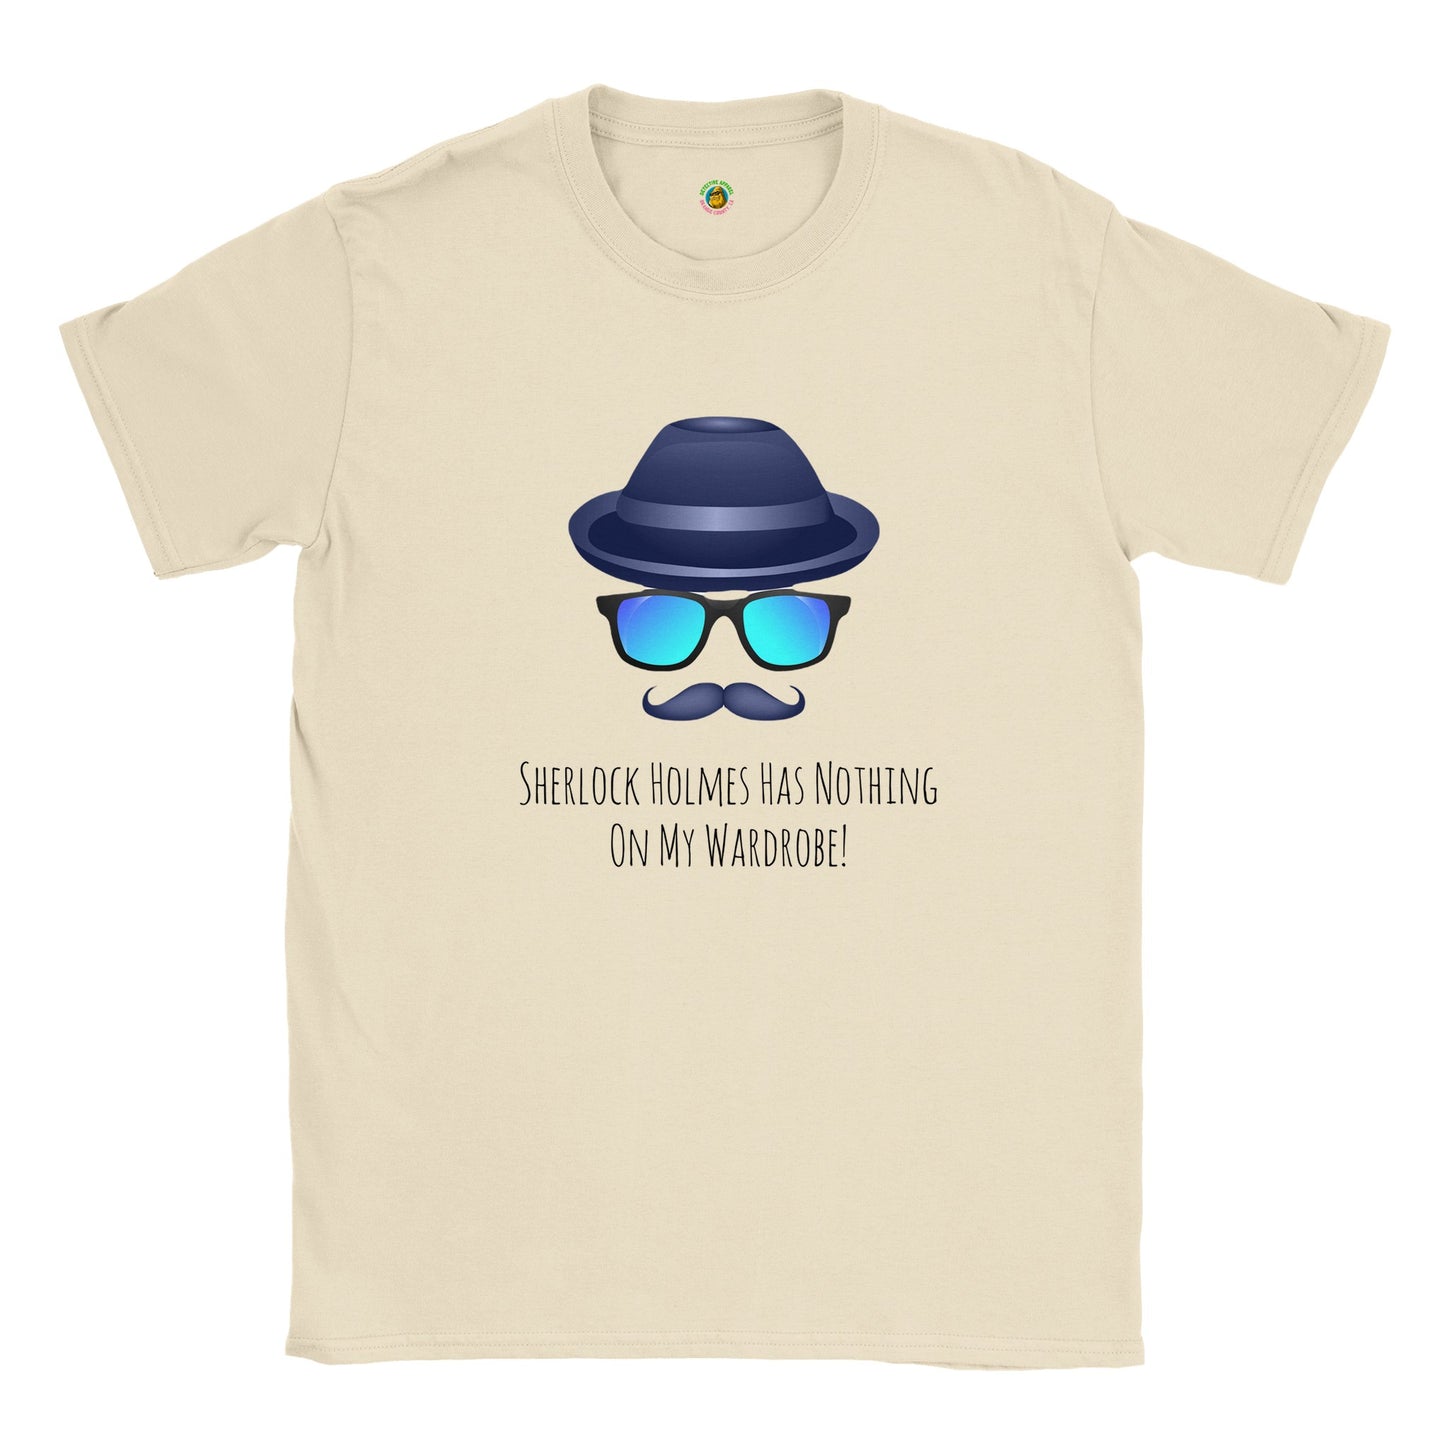 Short-Sleeve Unisex Crewneck T-shirt - Sherlock Holmes Has Nothing On My Wardrobe